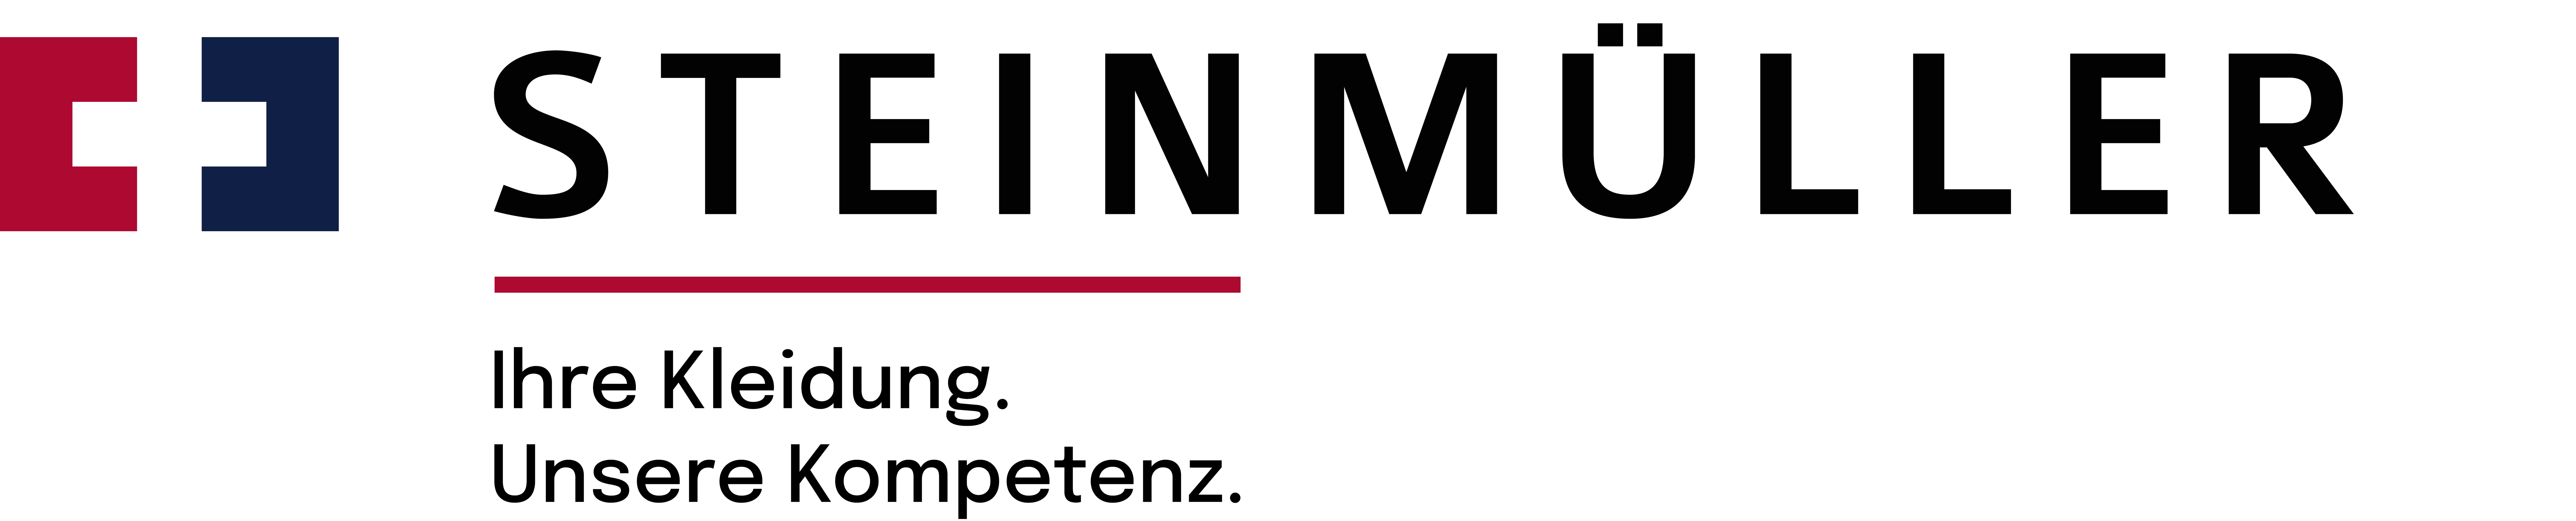 Steinmüller GmbH | Logo | Kundenreferenz